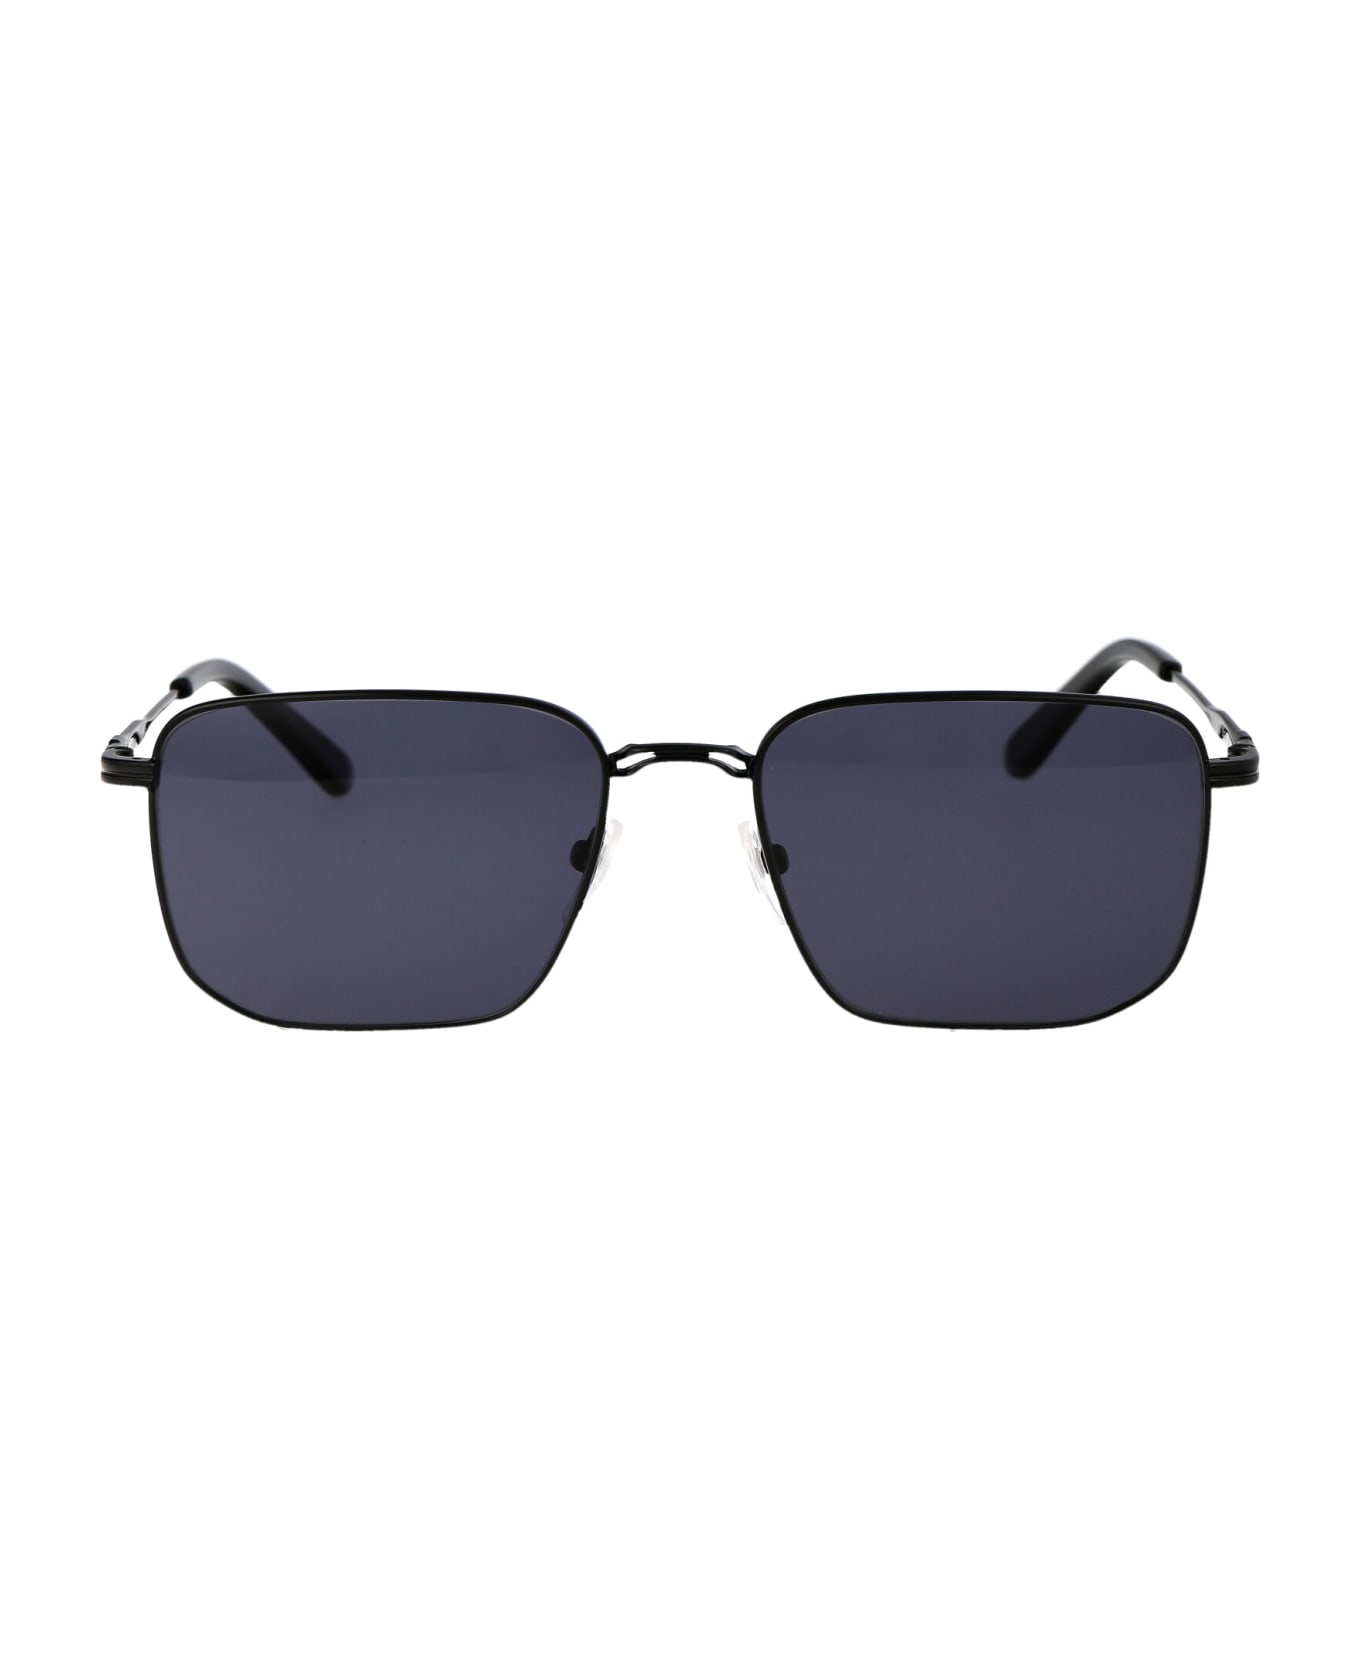 Calvin Klein Ck23101s Sunglasses - 001 BLACK サングラス